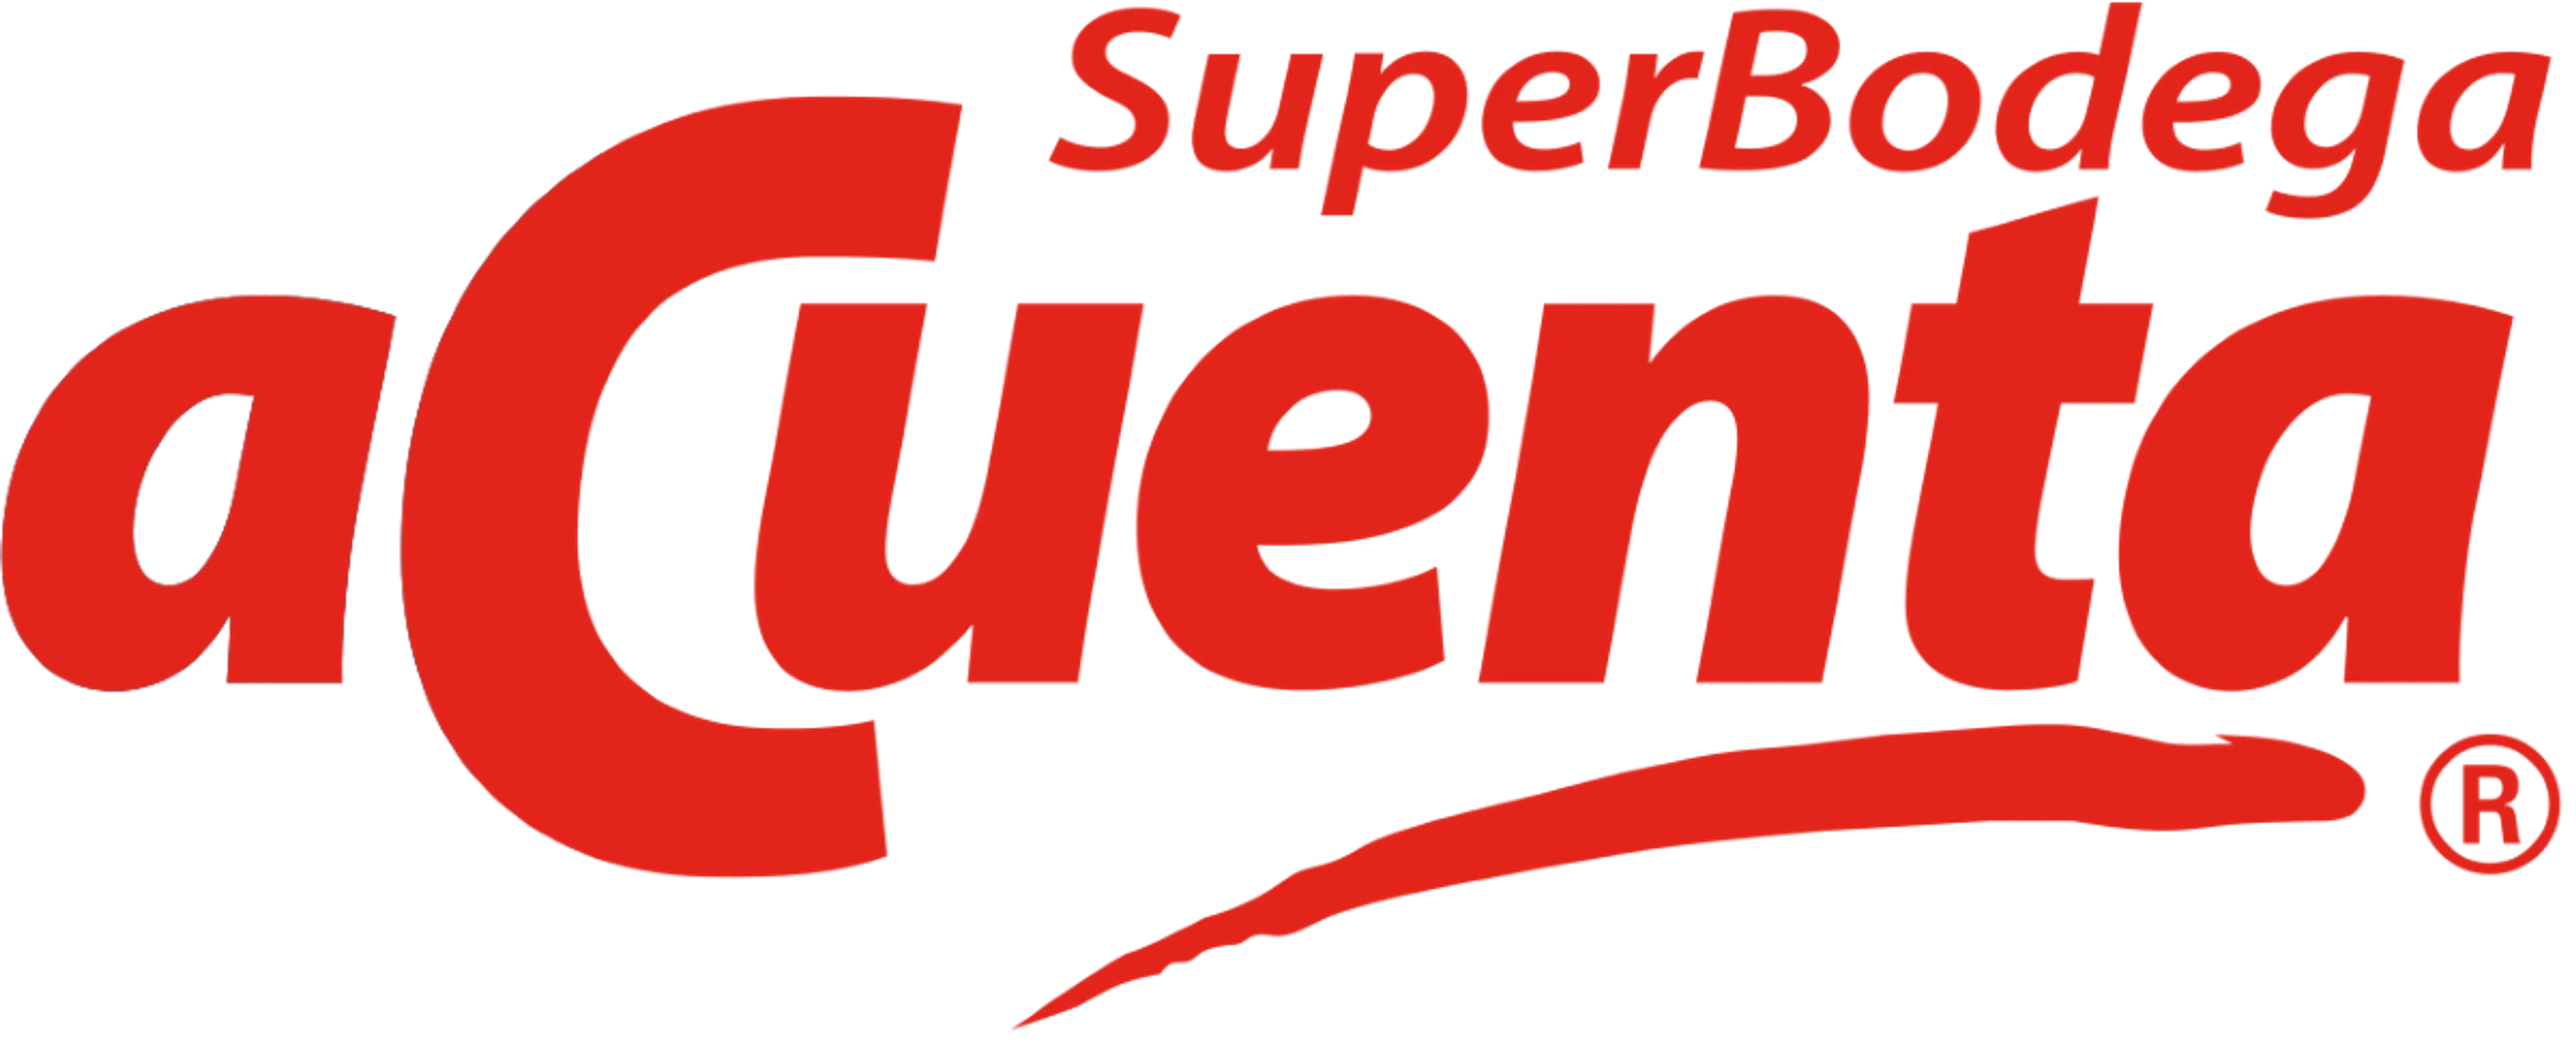 SUPER BODEGA A CUENTA logo